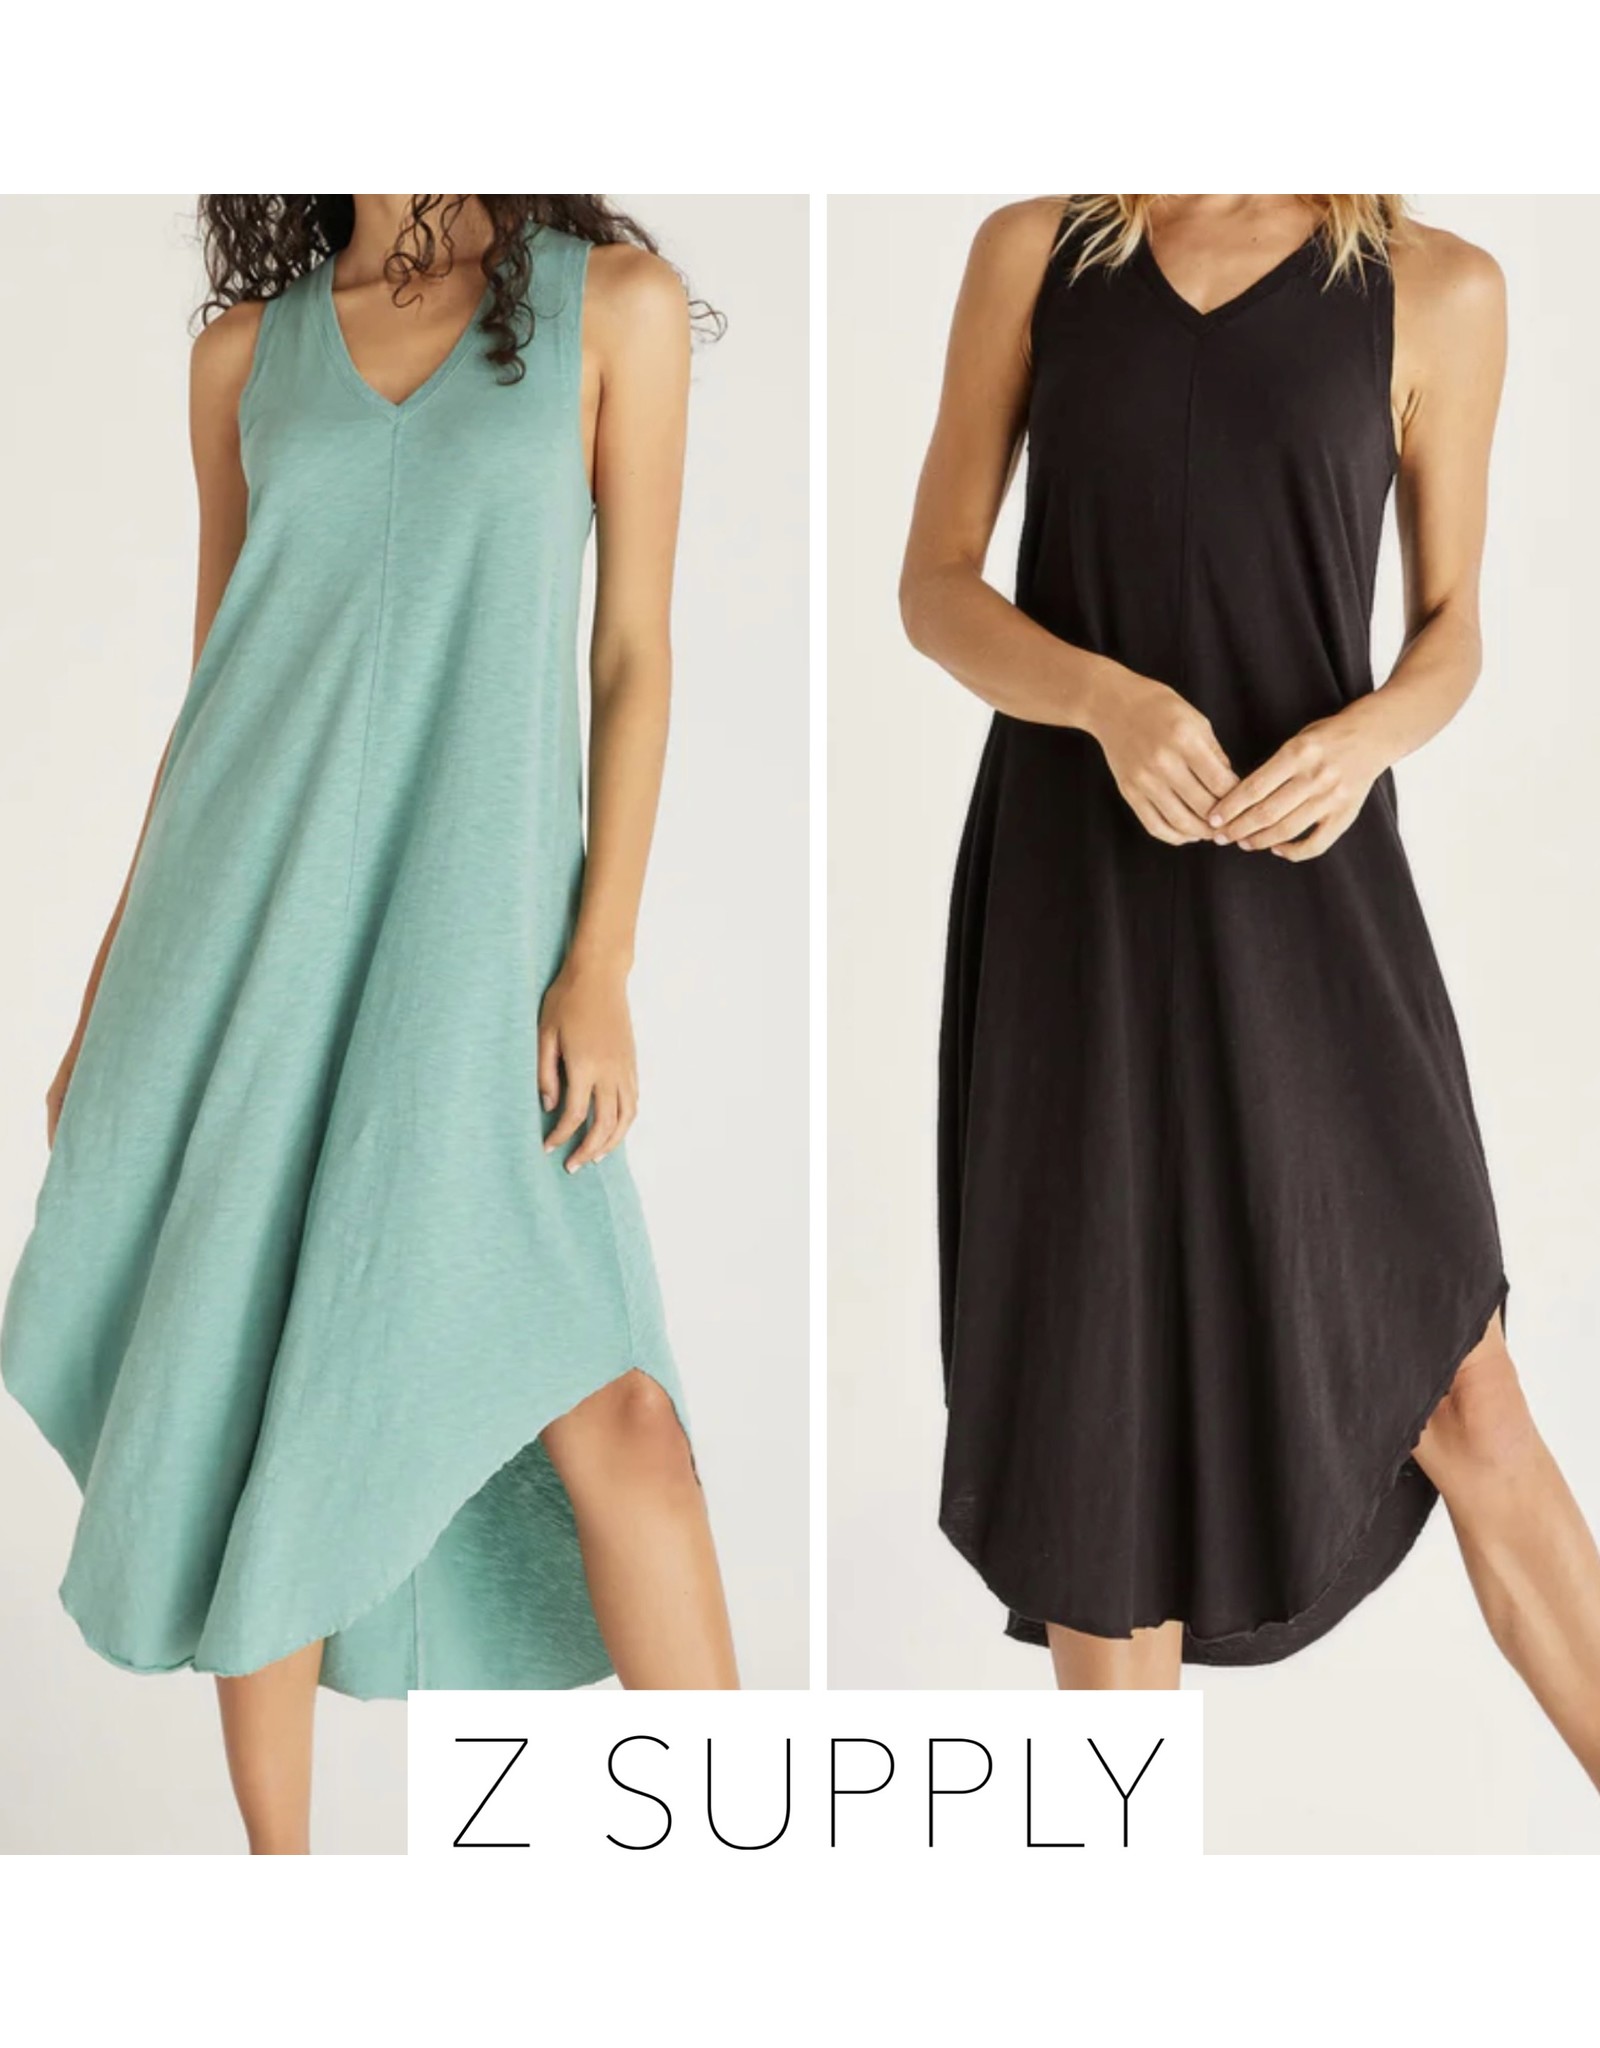 Z Supply Z Supply The Reverie Slub Dress